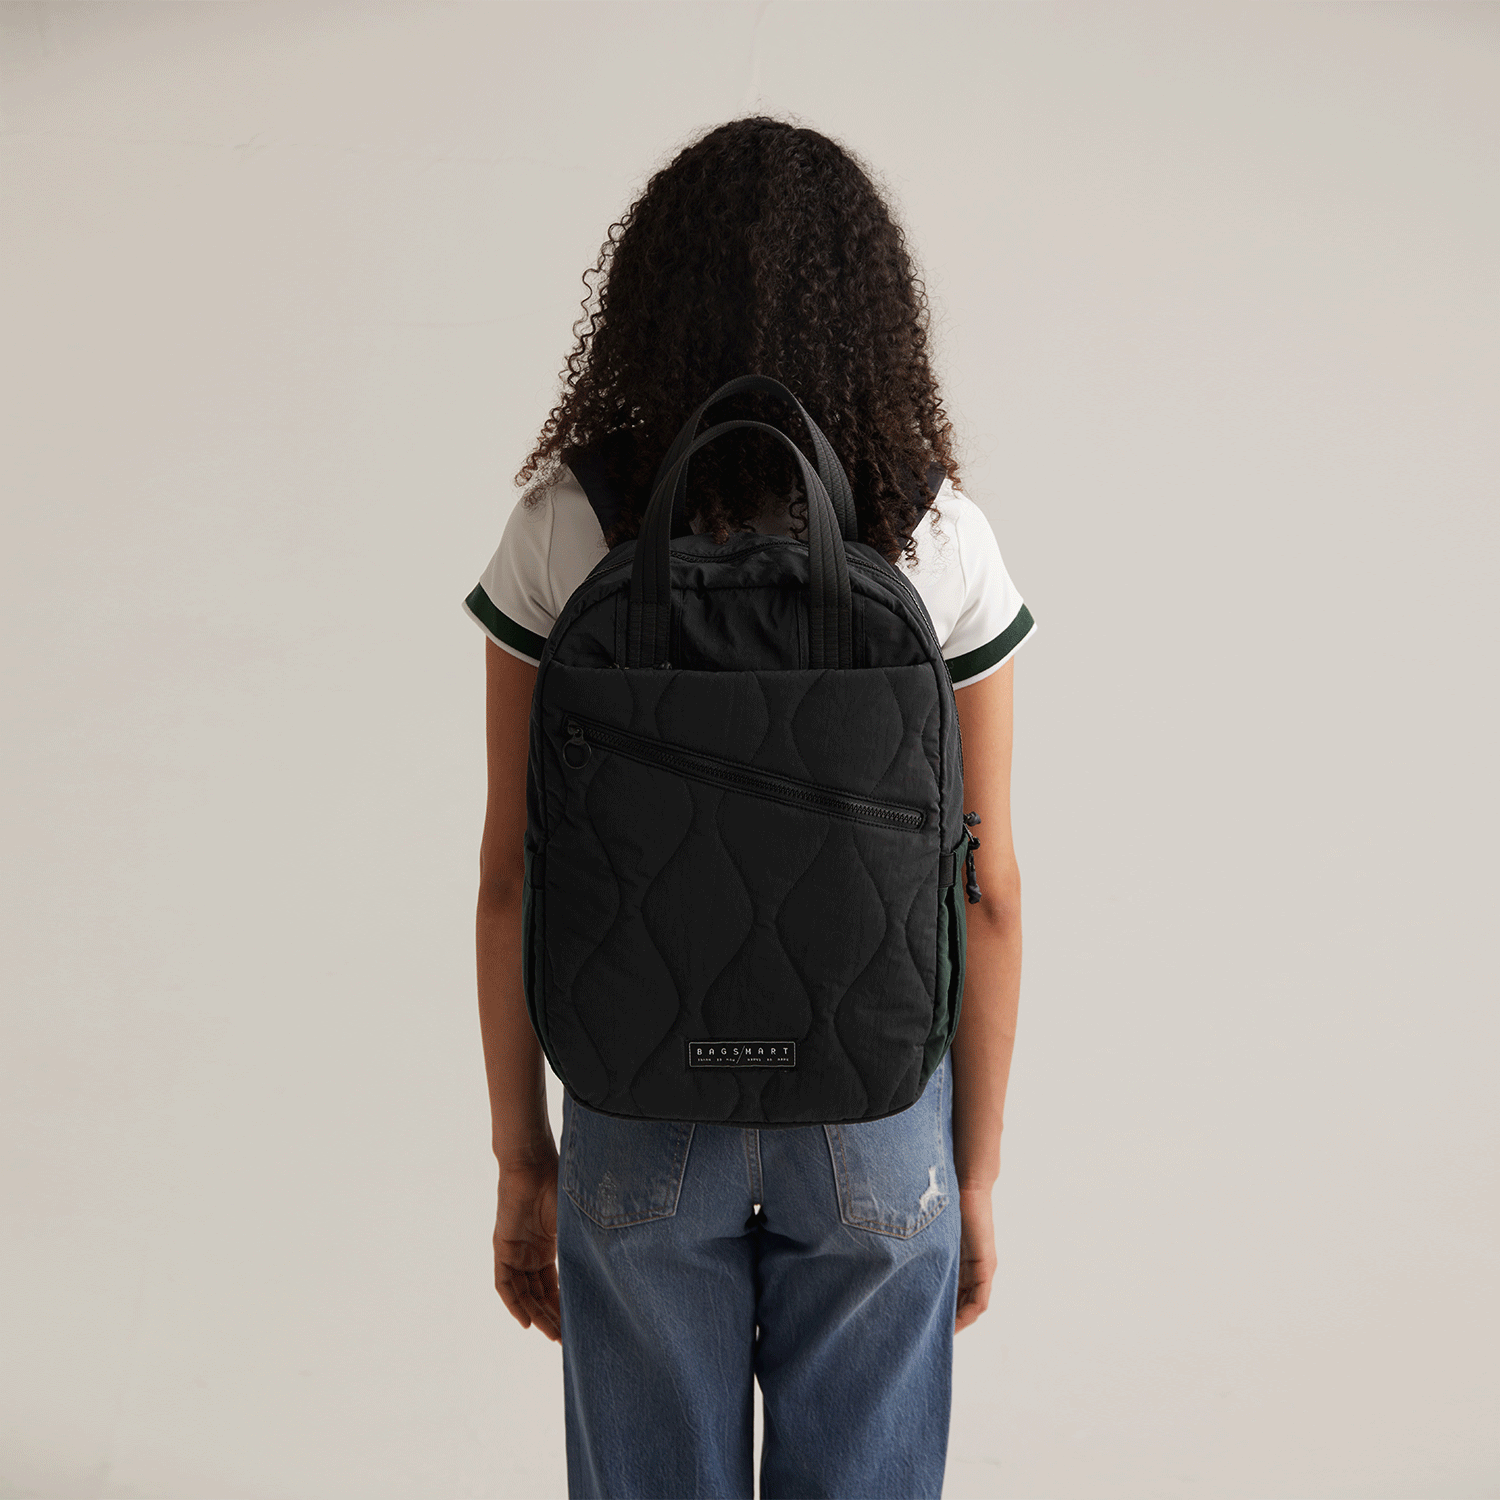 Vega Backpack Work Backpack for Women